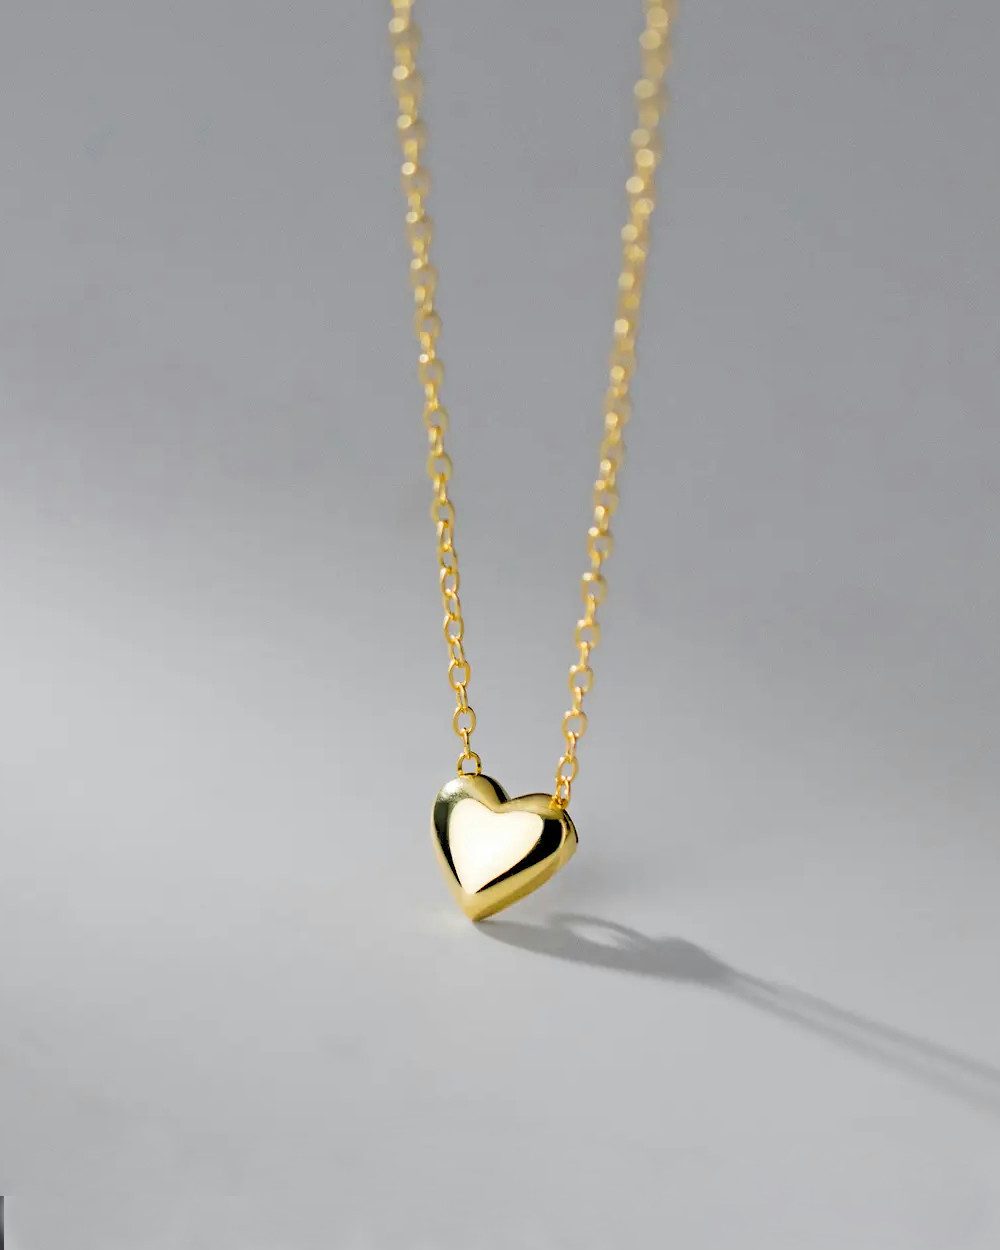 DANIEL CLIFFORD Herzkette 'Janet' Damen Halskette 18 Karat vergoldet mit Anhänger Herz (inkl. Verpackung), 44cm filigrane Halskette aus 925 Silber vergoldet mit Herz Anhänger